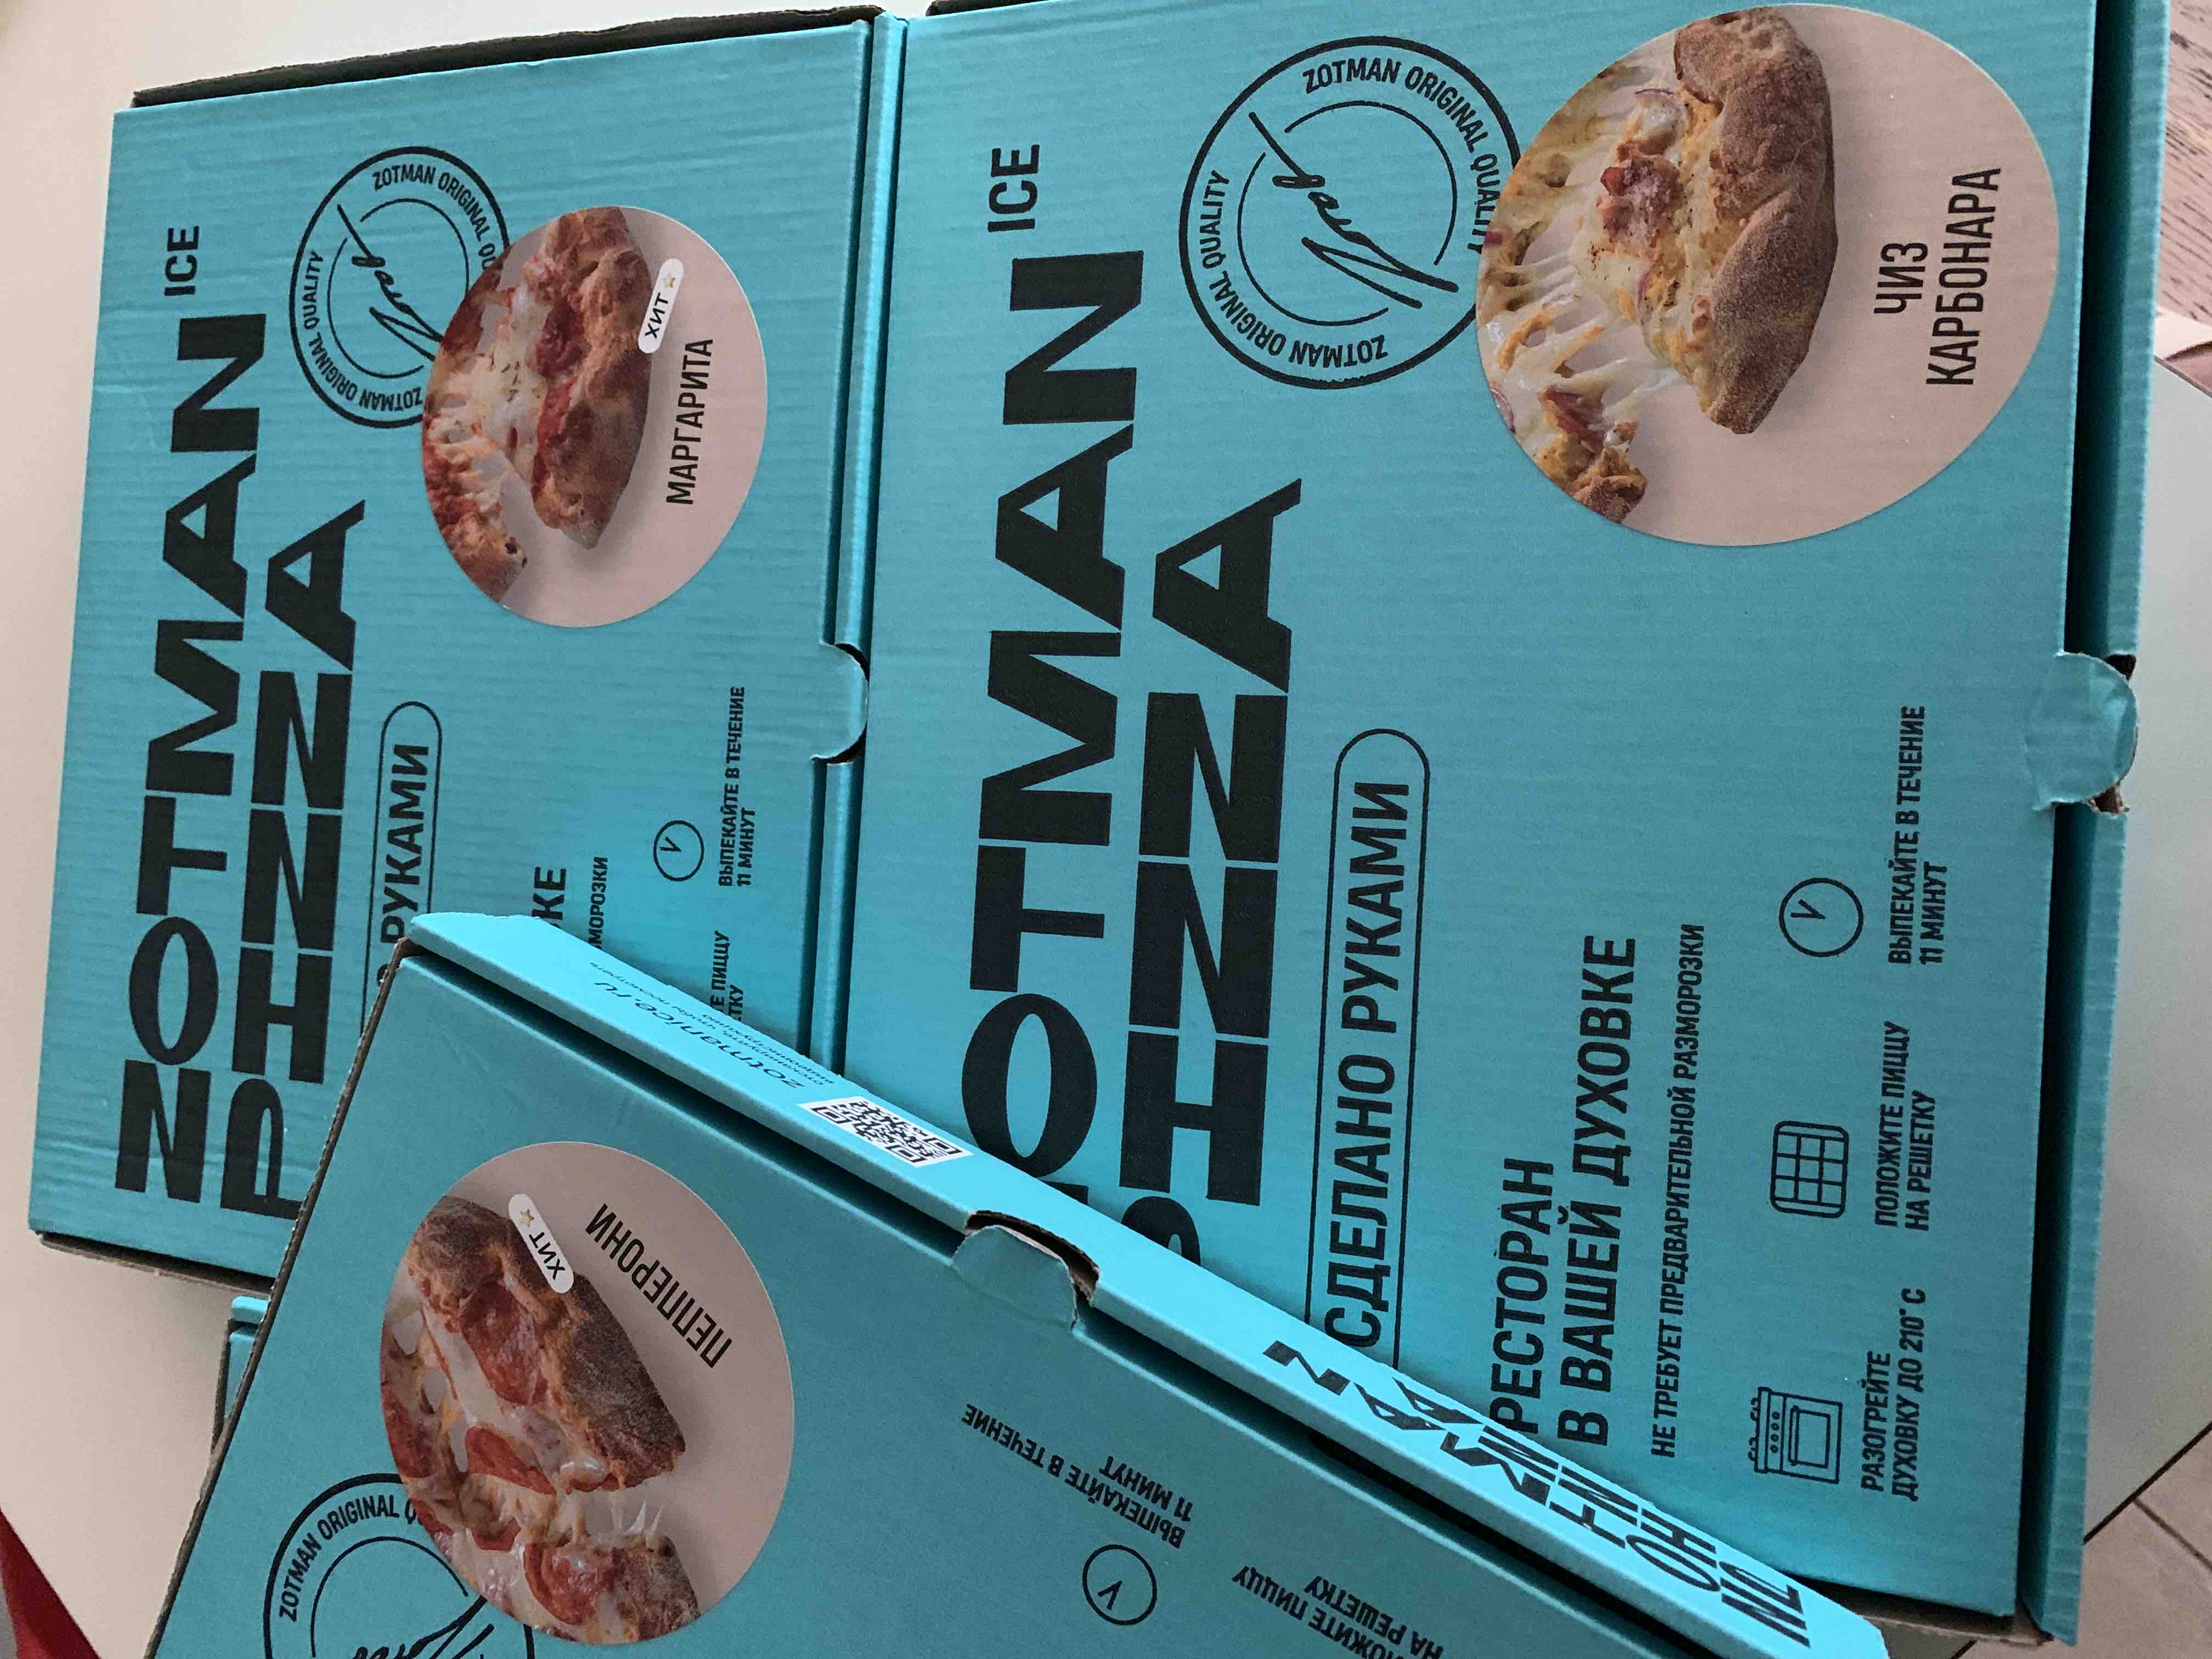 Zotman купить замороженная. Zotman 4 сыра. Zotman pizza замороженная. Пицца сырная Zotman. Зотман пицца 4 сыра замороженная.